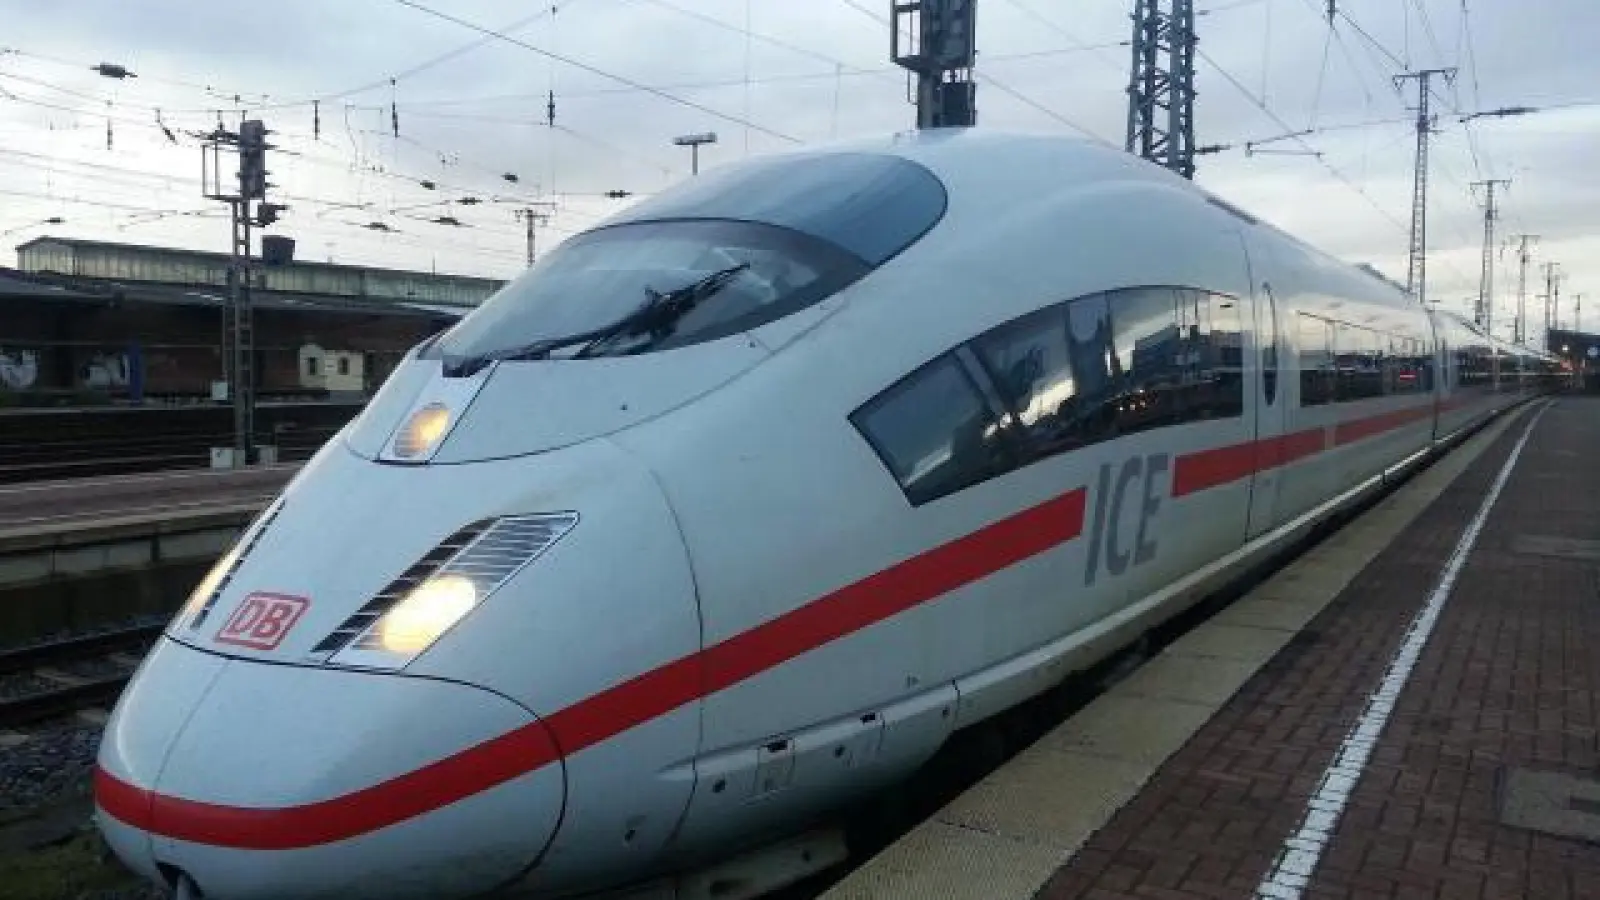 Reisen mit der Bahn:   Durch den Deutschland-Takt könnten auch mehr ICEs Augsburg an den Fernverkehr anbinden.		Foto: KarinKarin - pixabay.com (Foto: KarinKarin - pixabay.com)